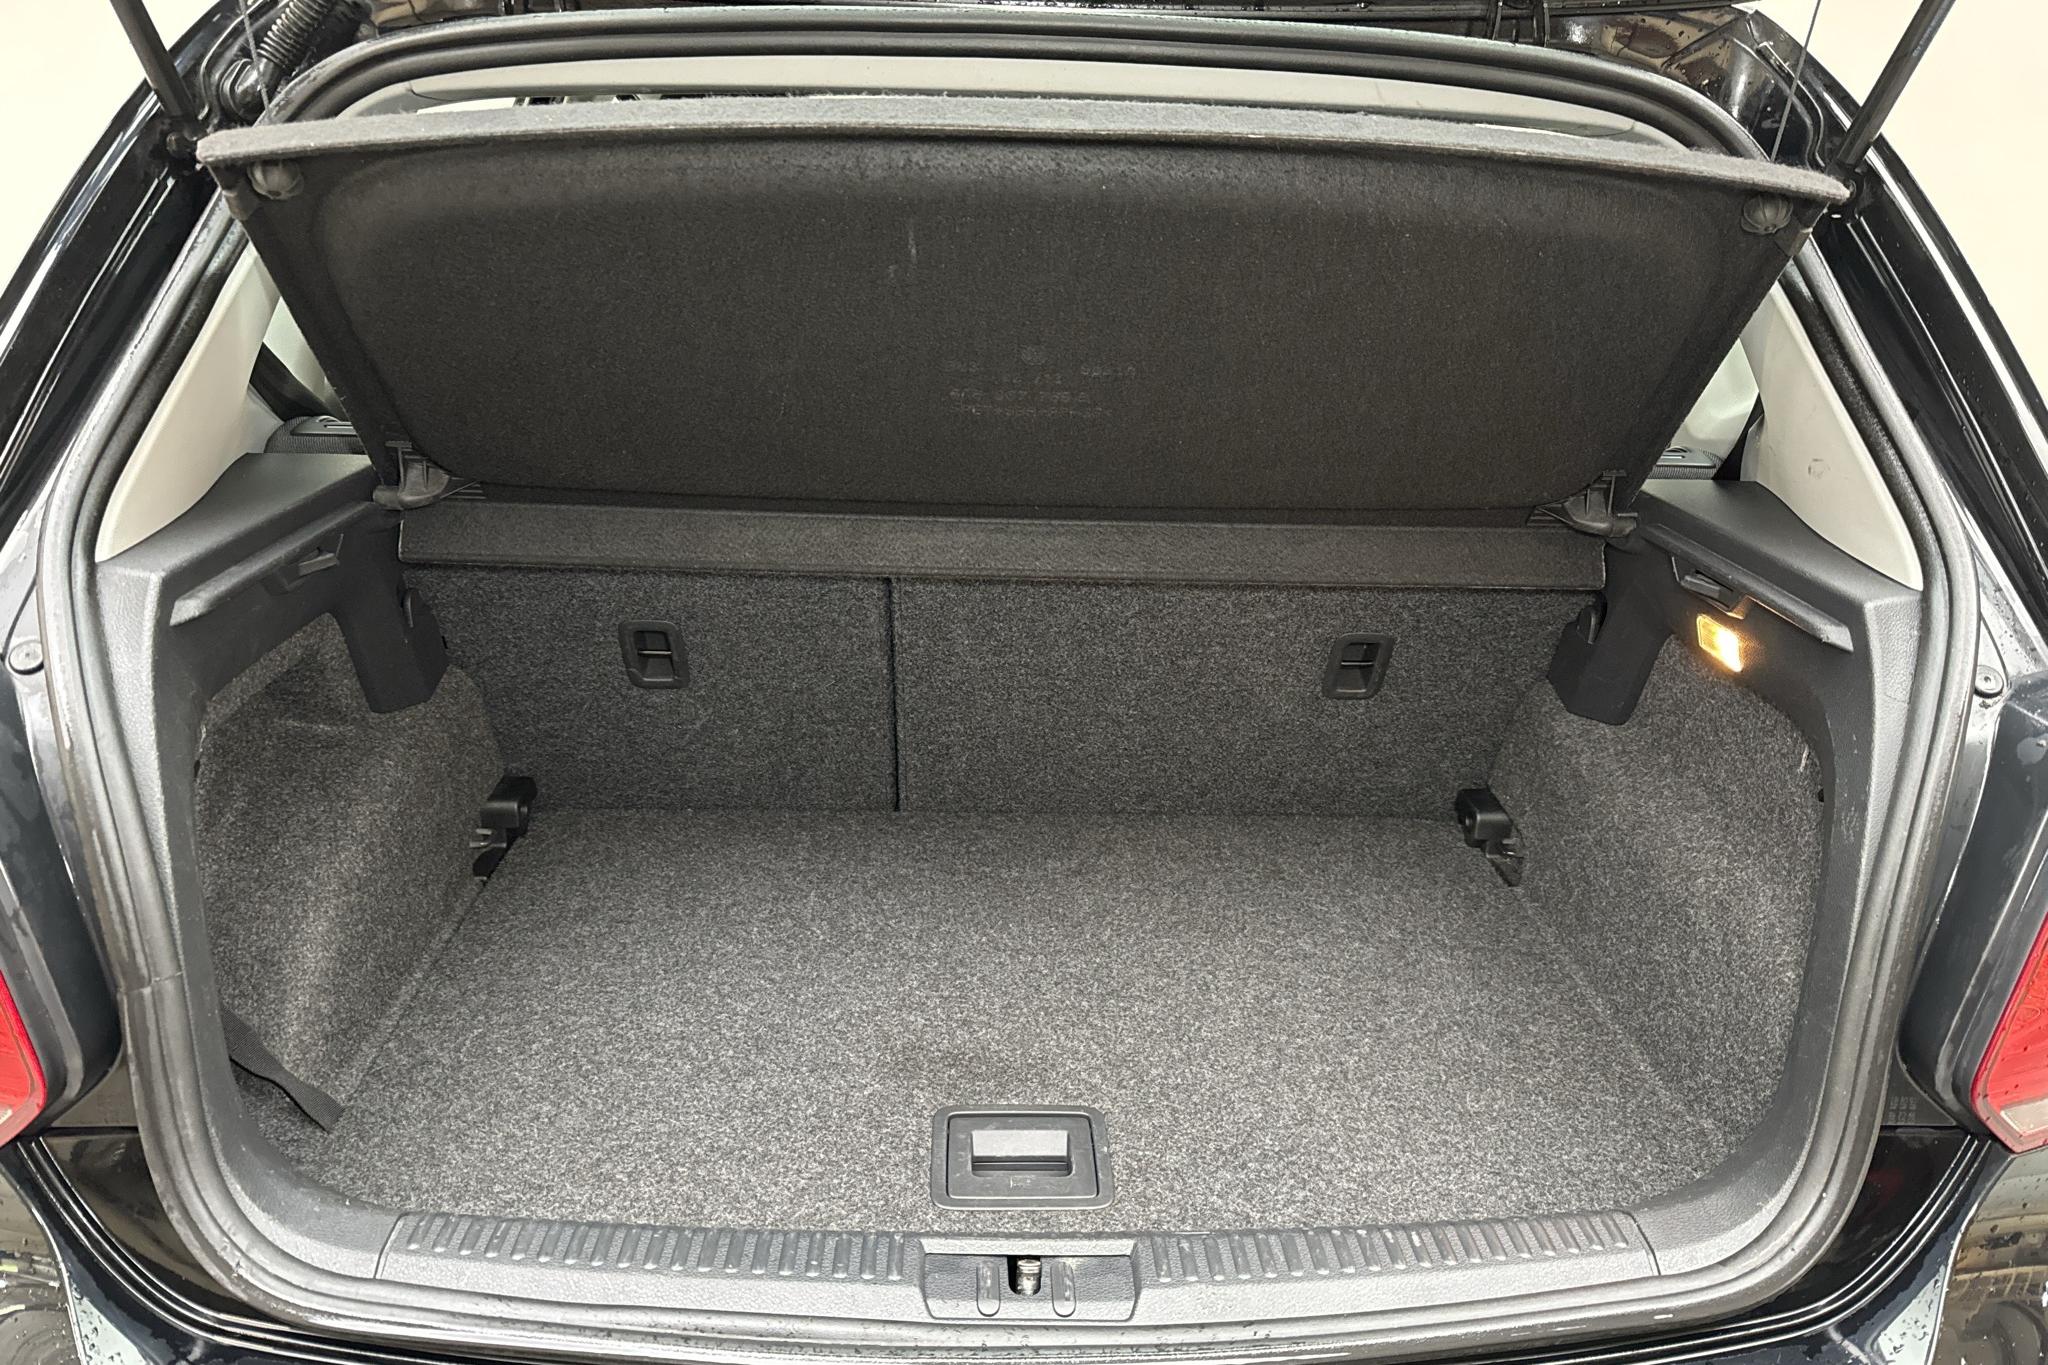 VW Polo 1.2 TSI 5dr (90hk) - 136 530 km - Manual - black - 2013